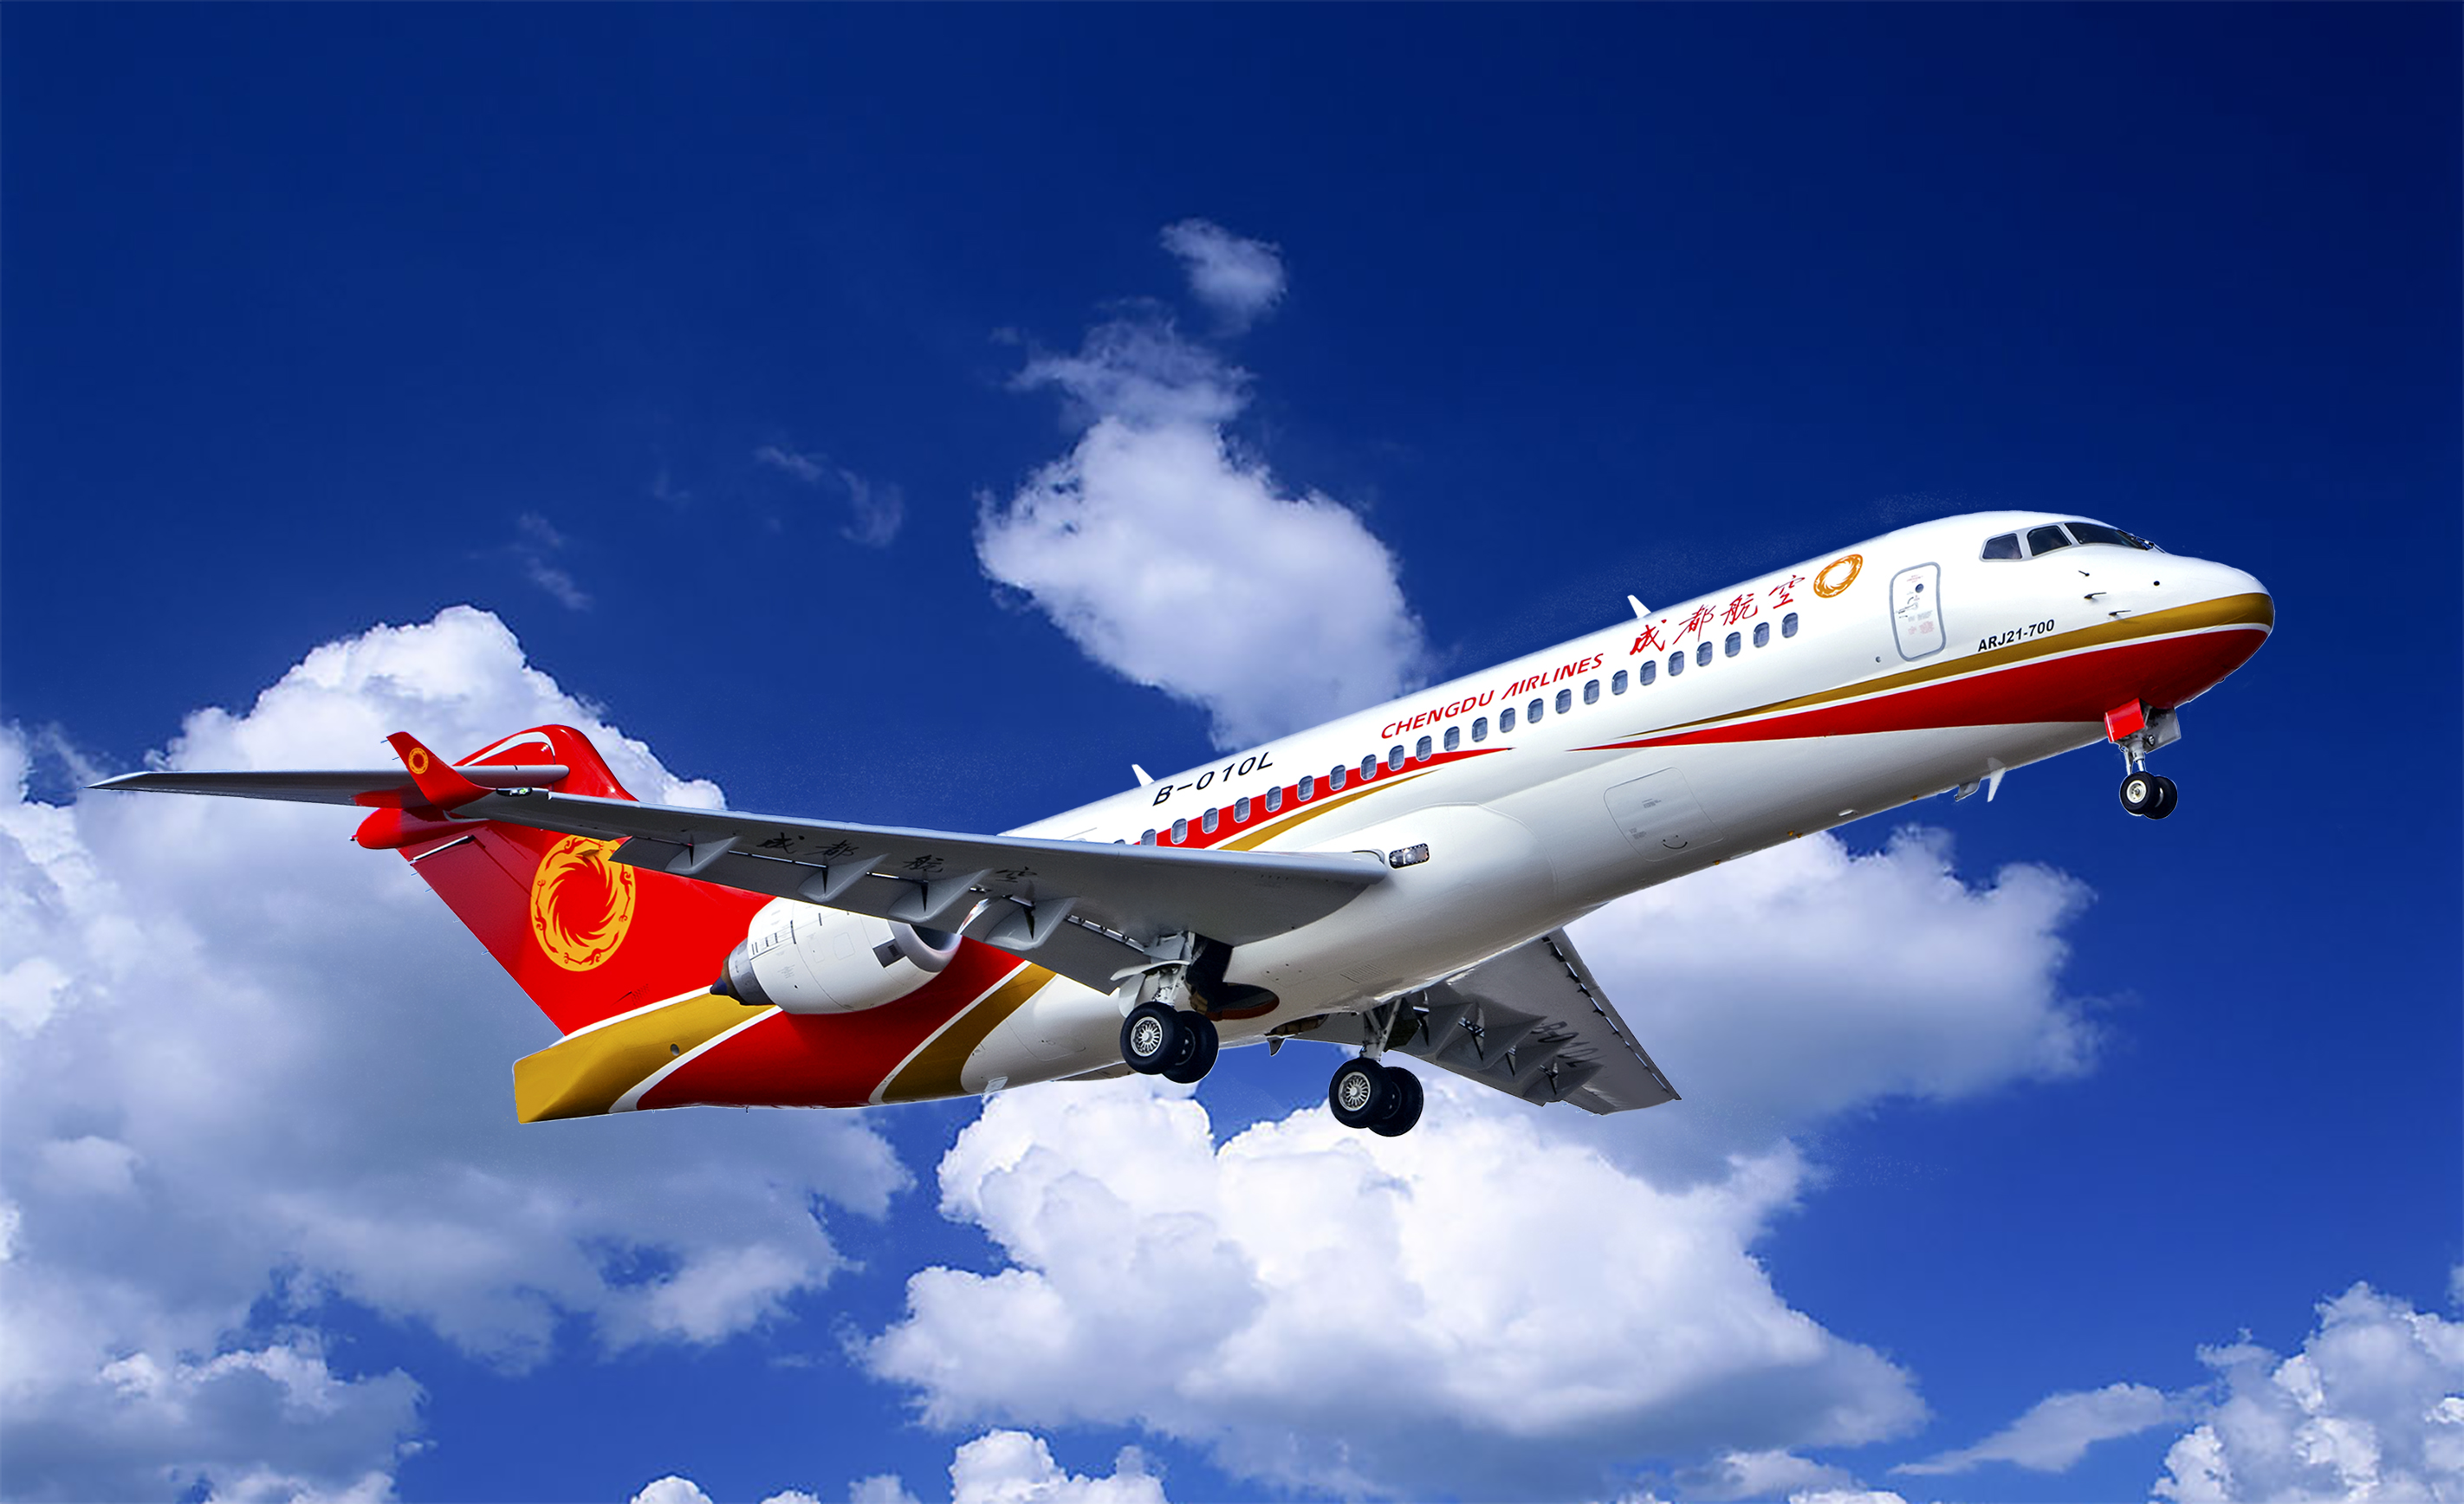 成都天府国际机场将于1月22日试飞 6家航空公司将派明星机型参与